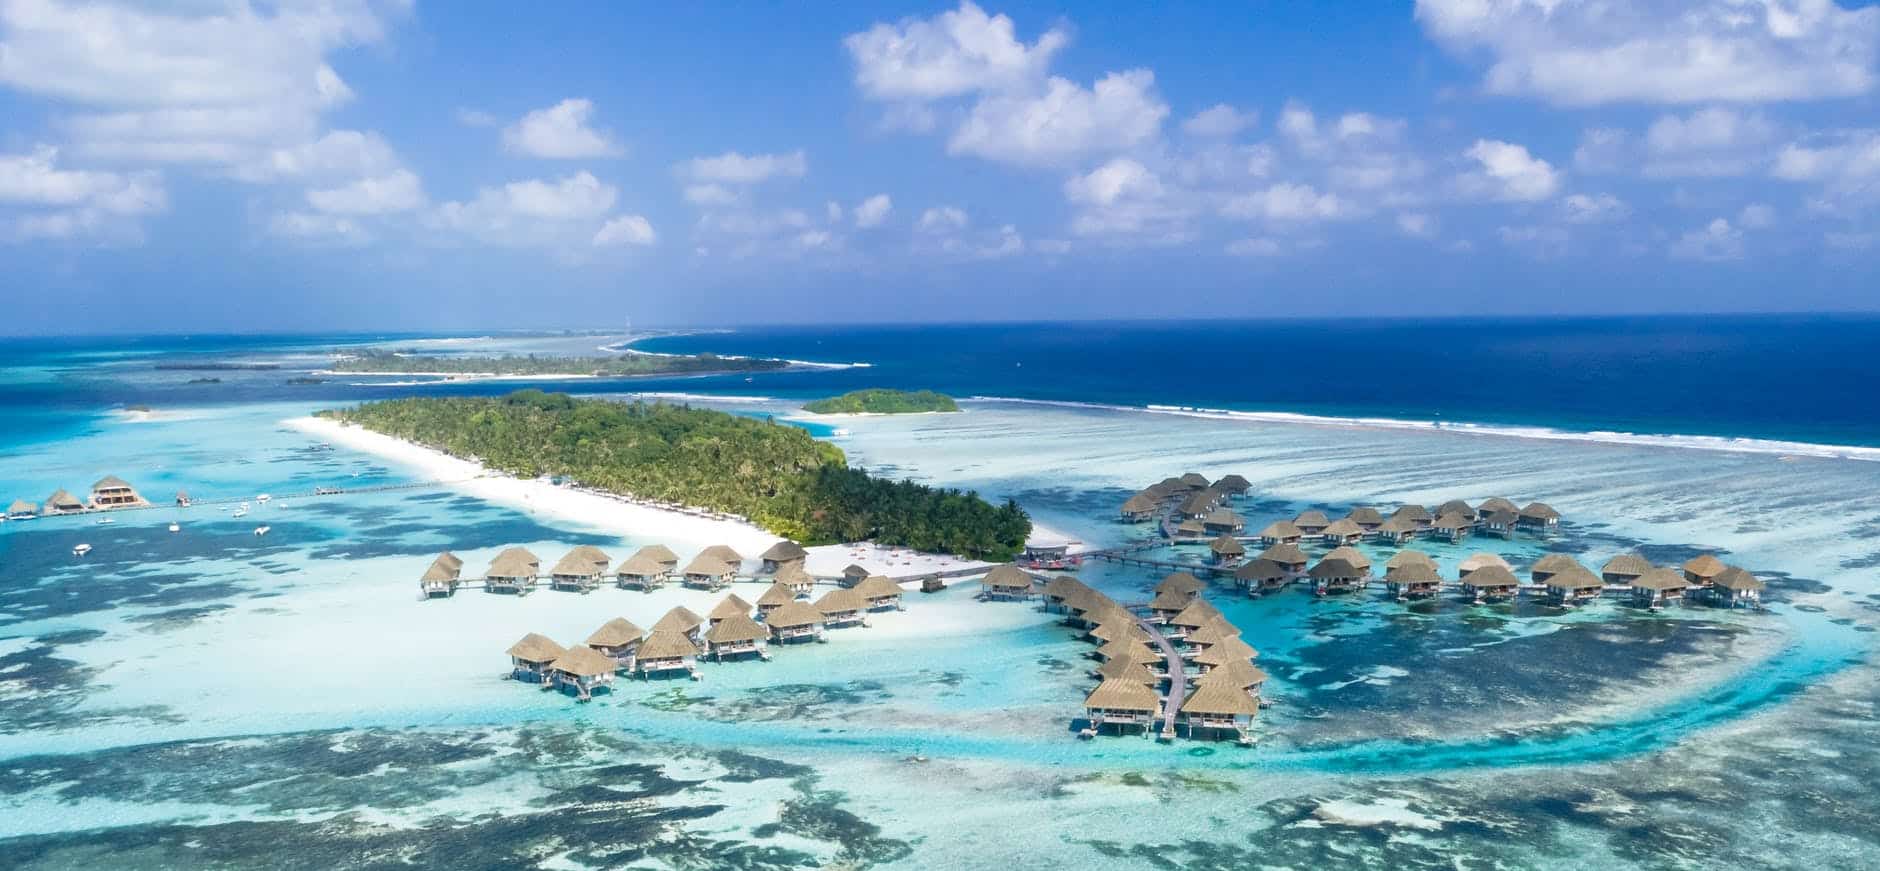 Consigli ed esperienze sulle isole resort delle Maldive: un viaggio in paradiso?